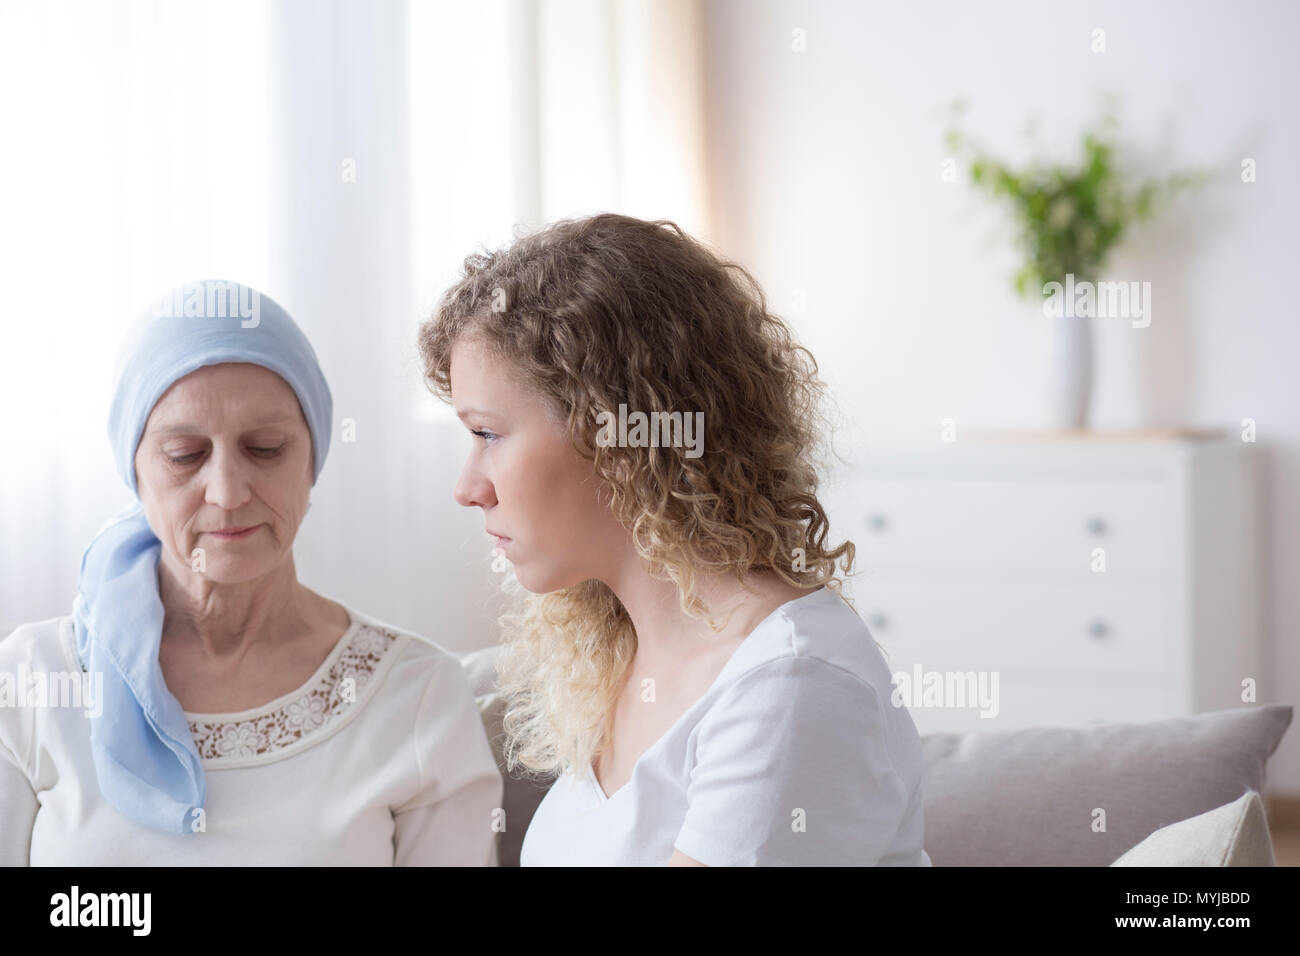 Traurige ältere Frau mit Krebs trägt einen blauen Kopftuch bei einem Treffen mit dem Betreuer Stockfoto